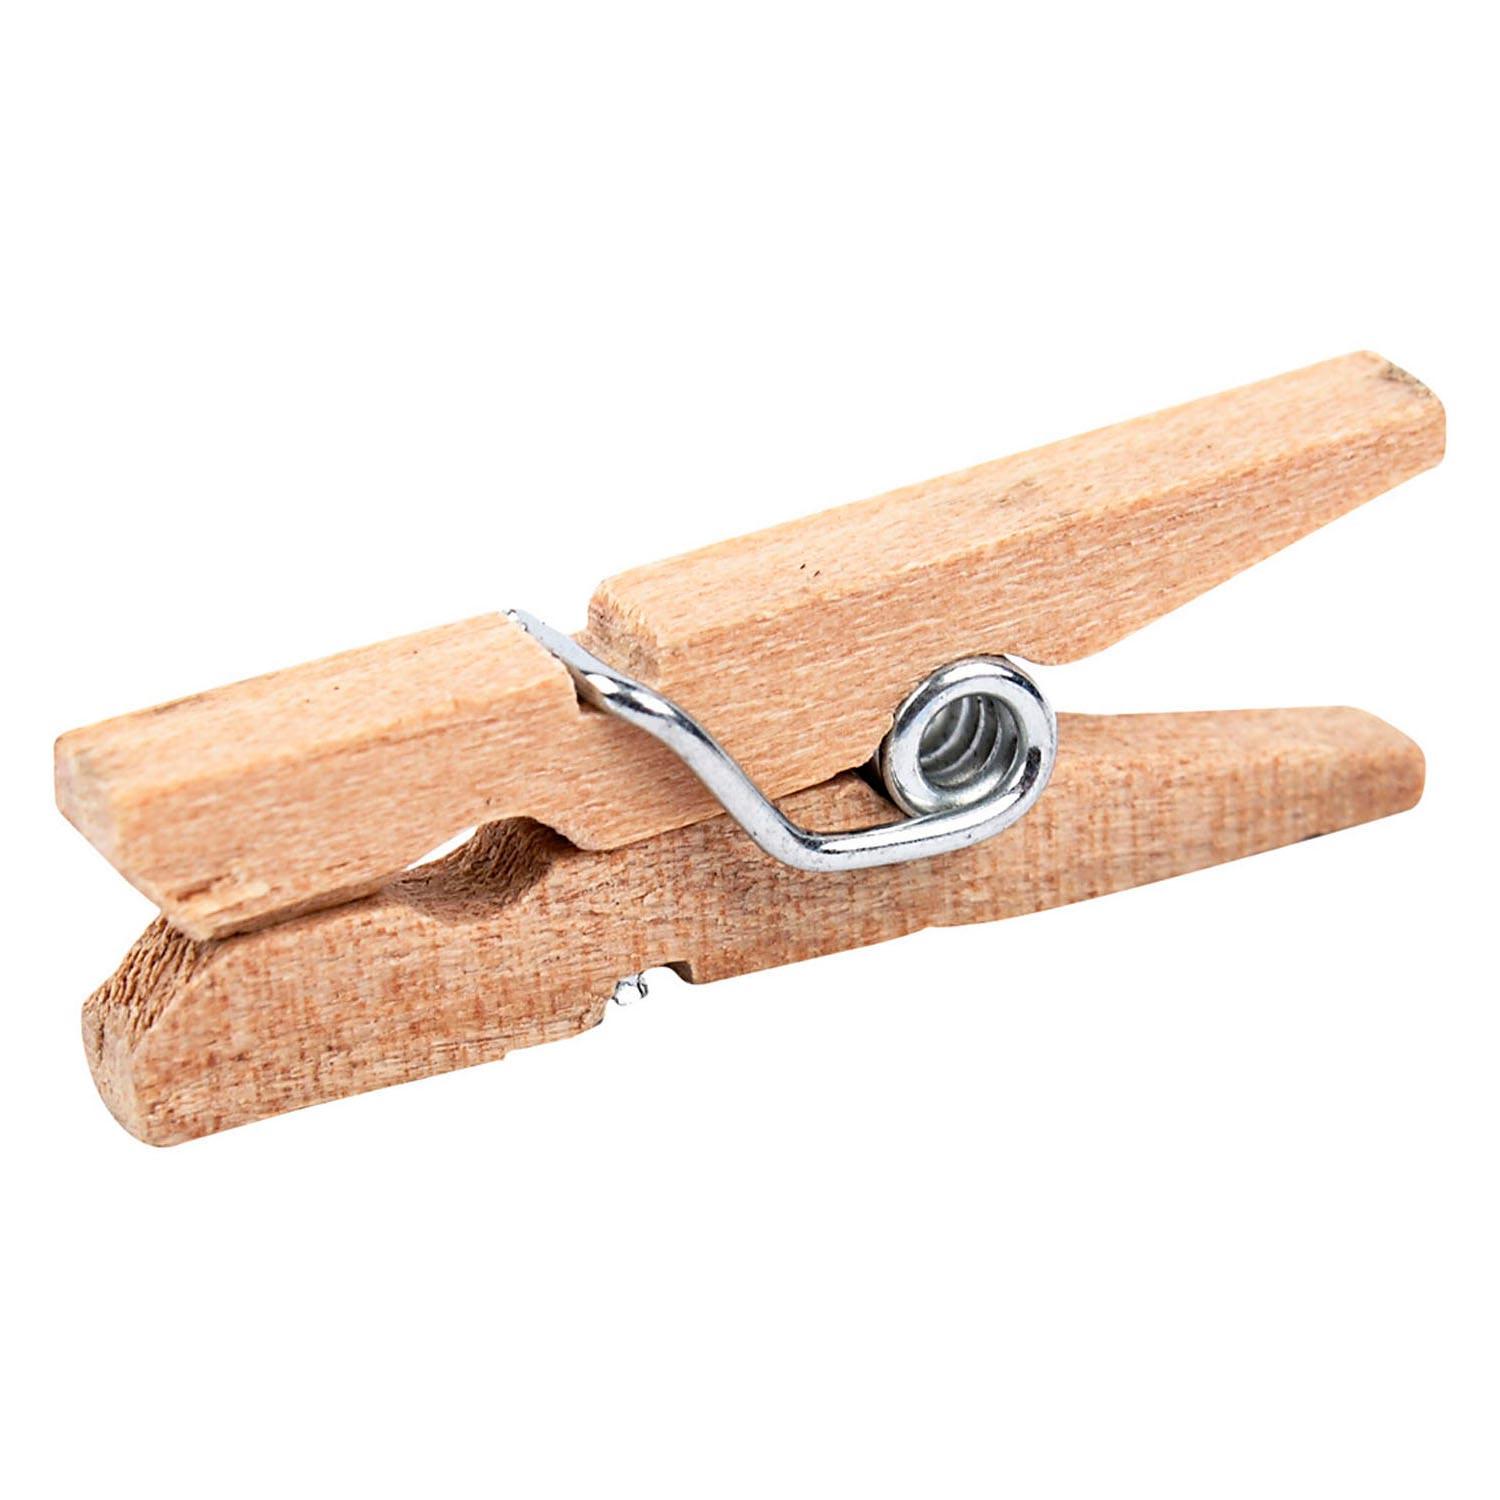 30pcs Mini Clothespins, Mini Clothes Pins for Photo Natural Wooden